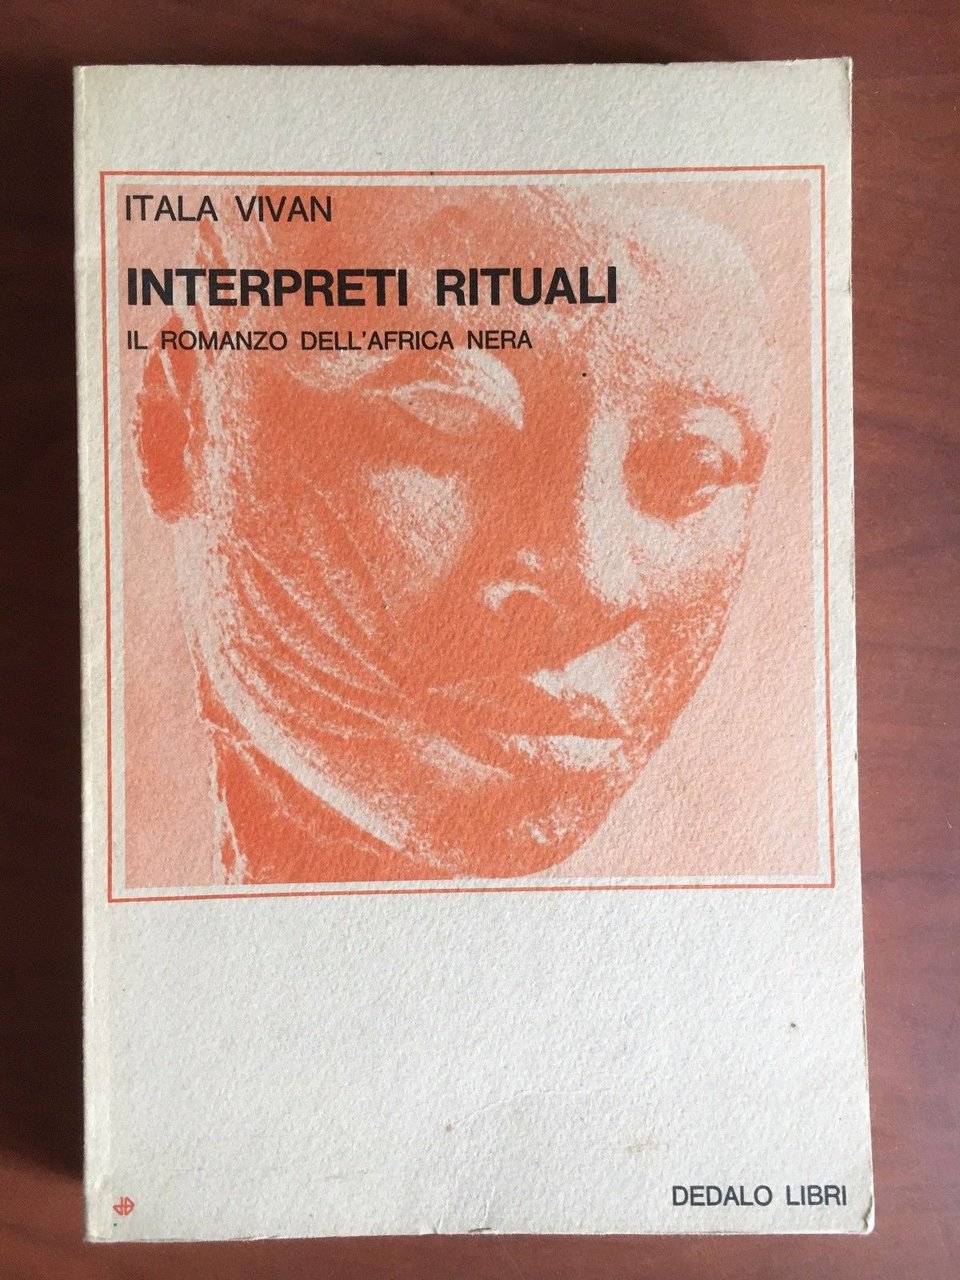 Interpreti rituali Itala Vivan Dedalo Libri 1978 - E22520